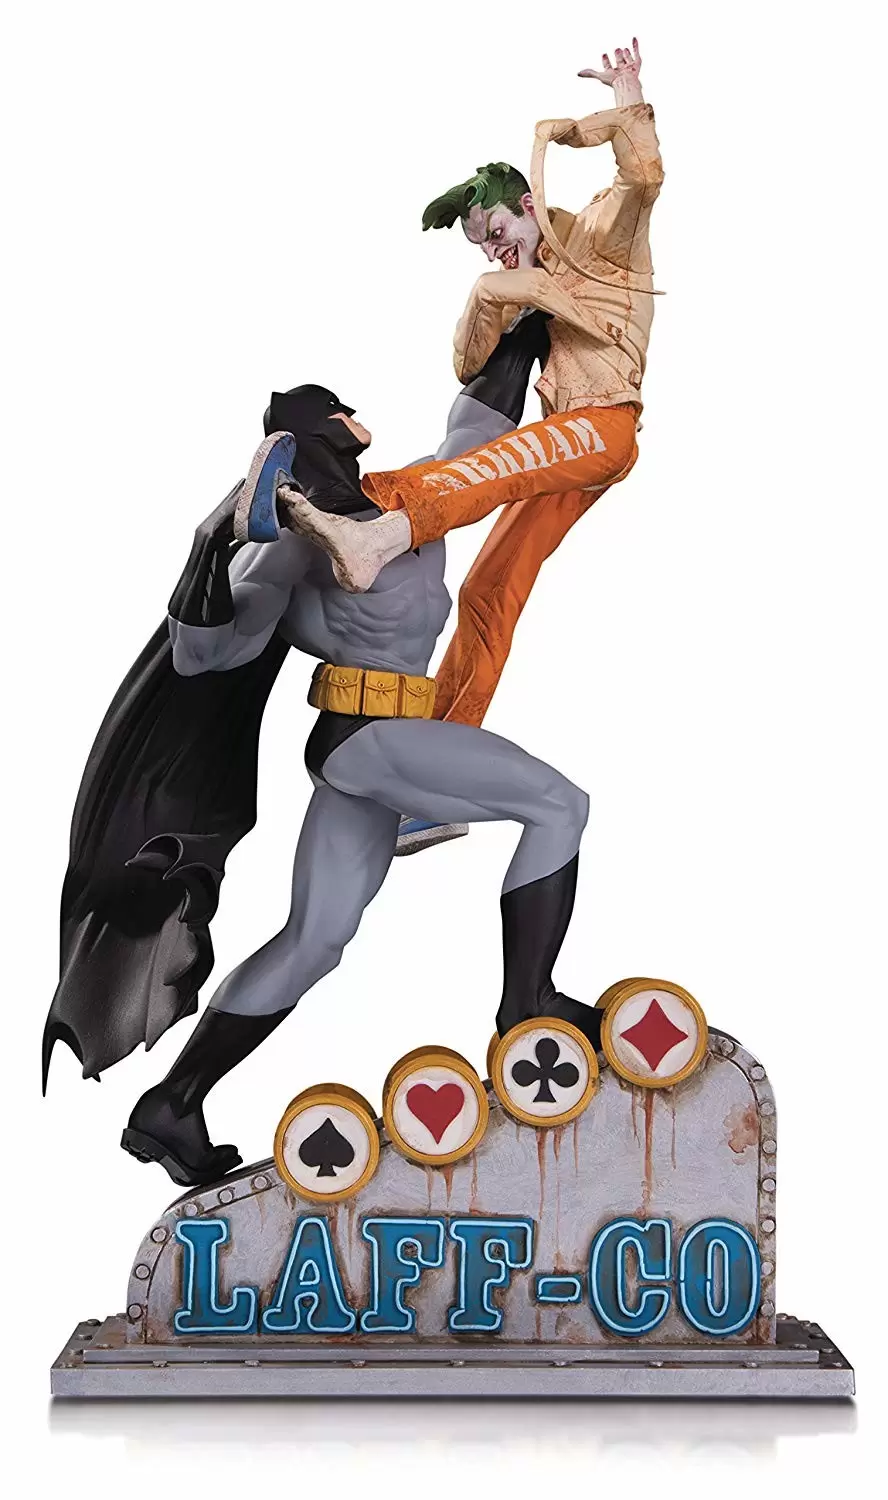 DC Collectibles Statues - Batman Vs Joker - Laff Co. Battle